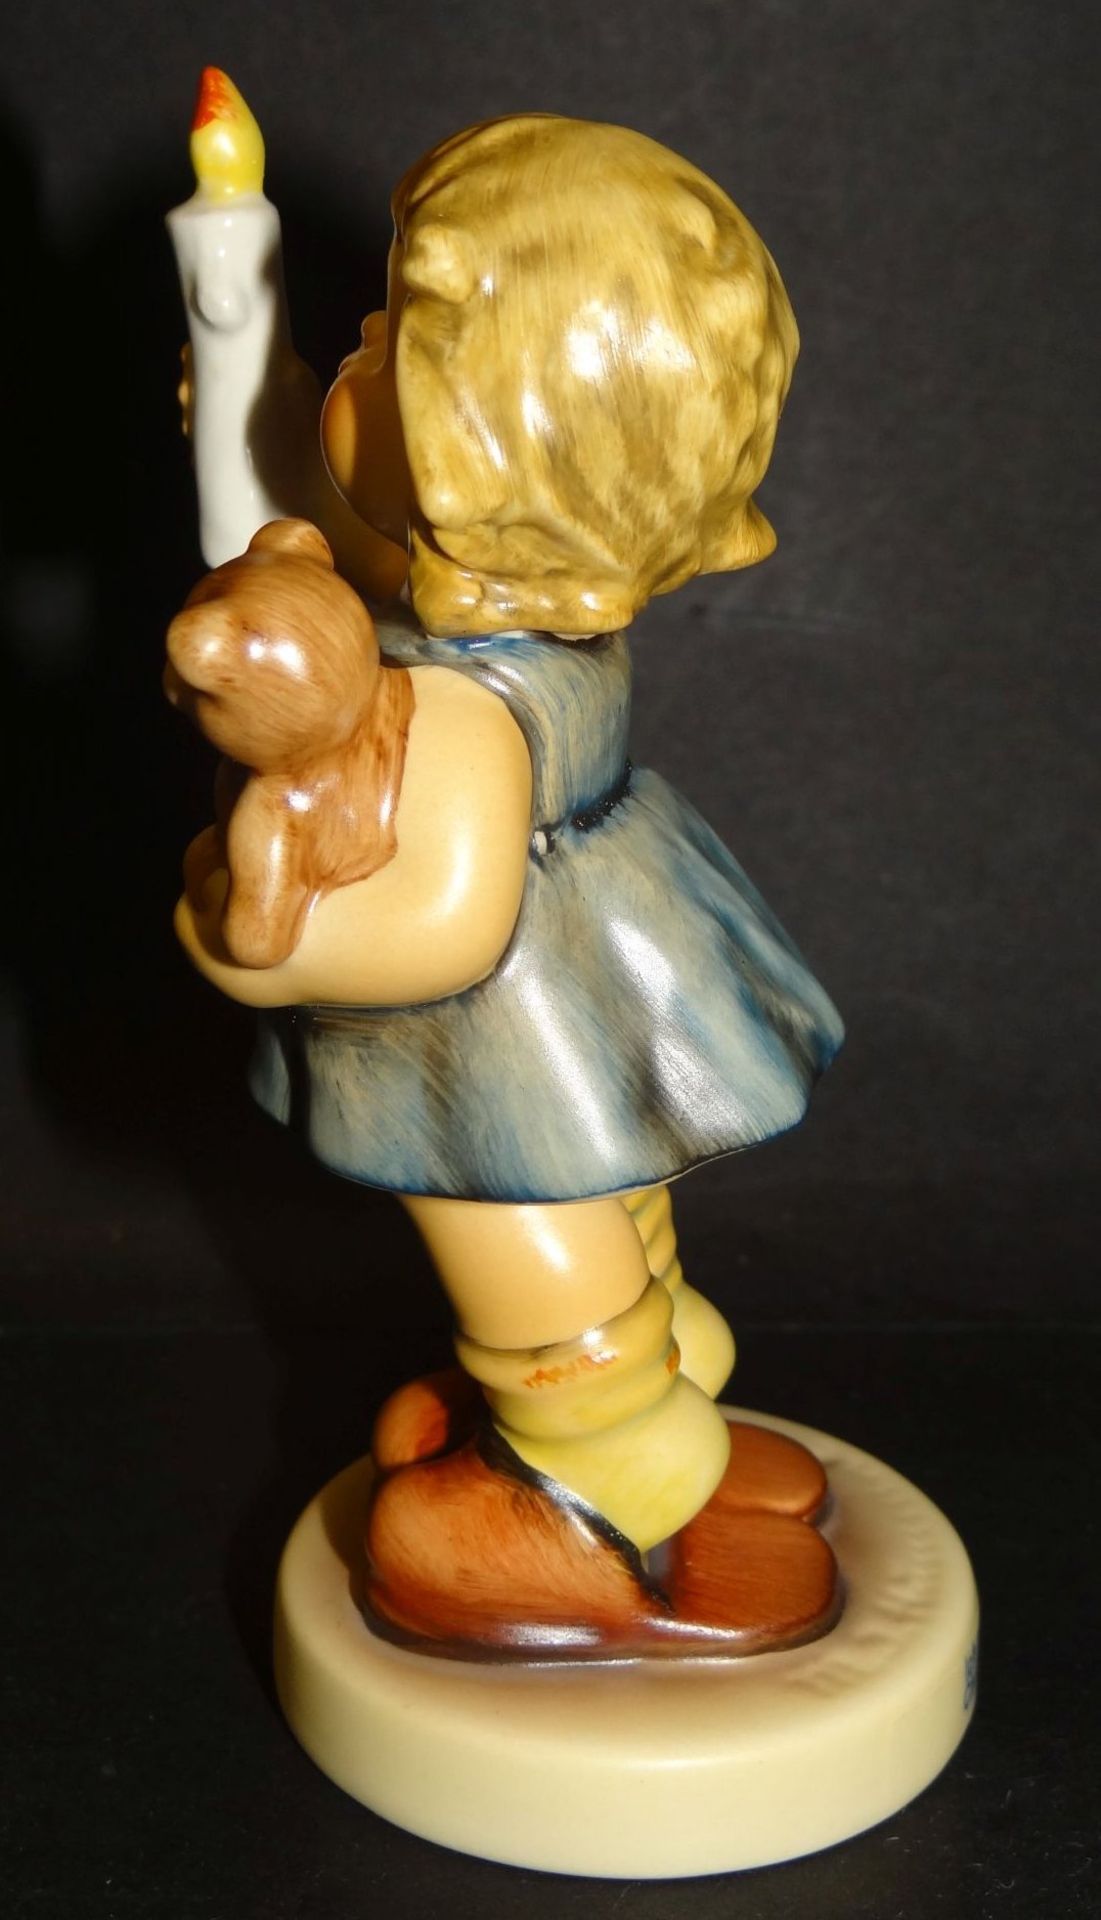 Hummel-Figur "Ich mach Licht" in orig. Karton, bemalt, H-11 cm, gut erhalten - Bild 3 aus 8